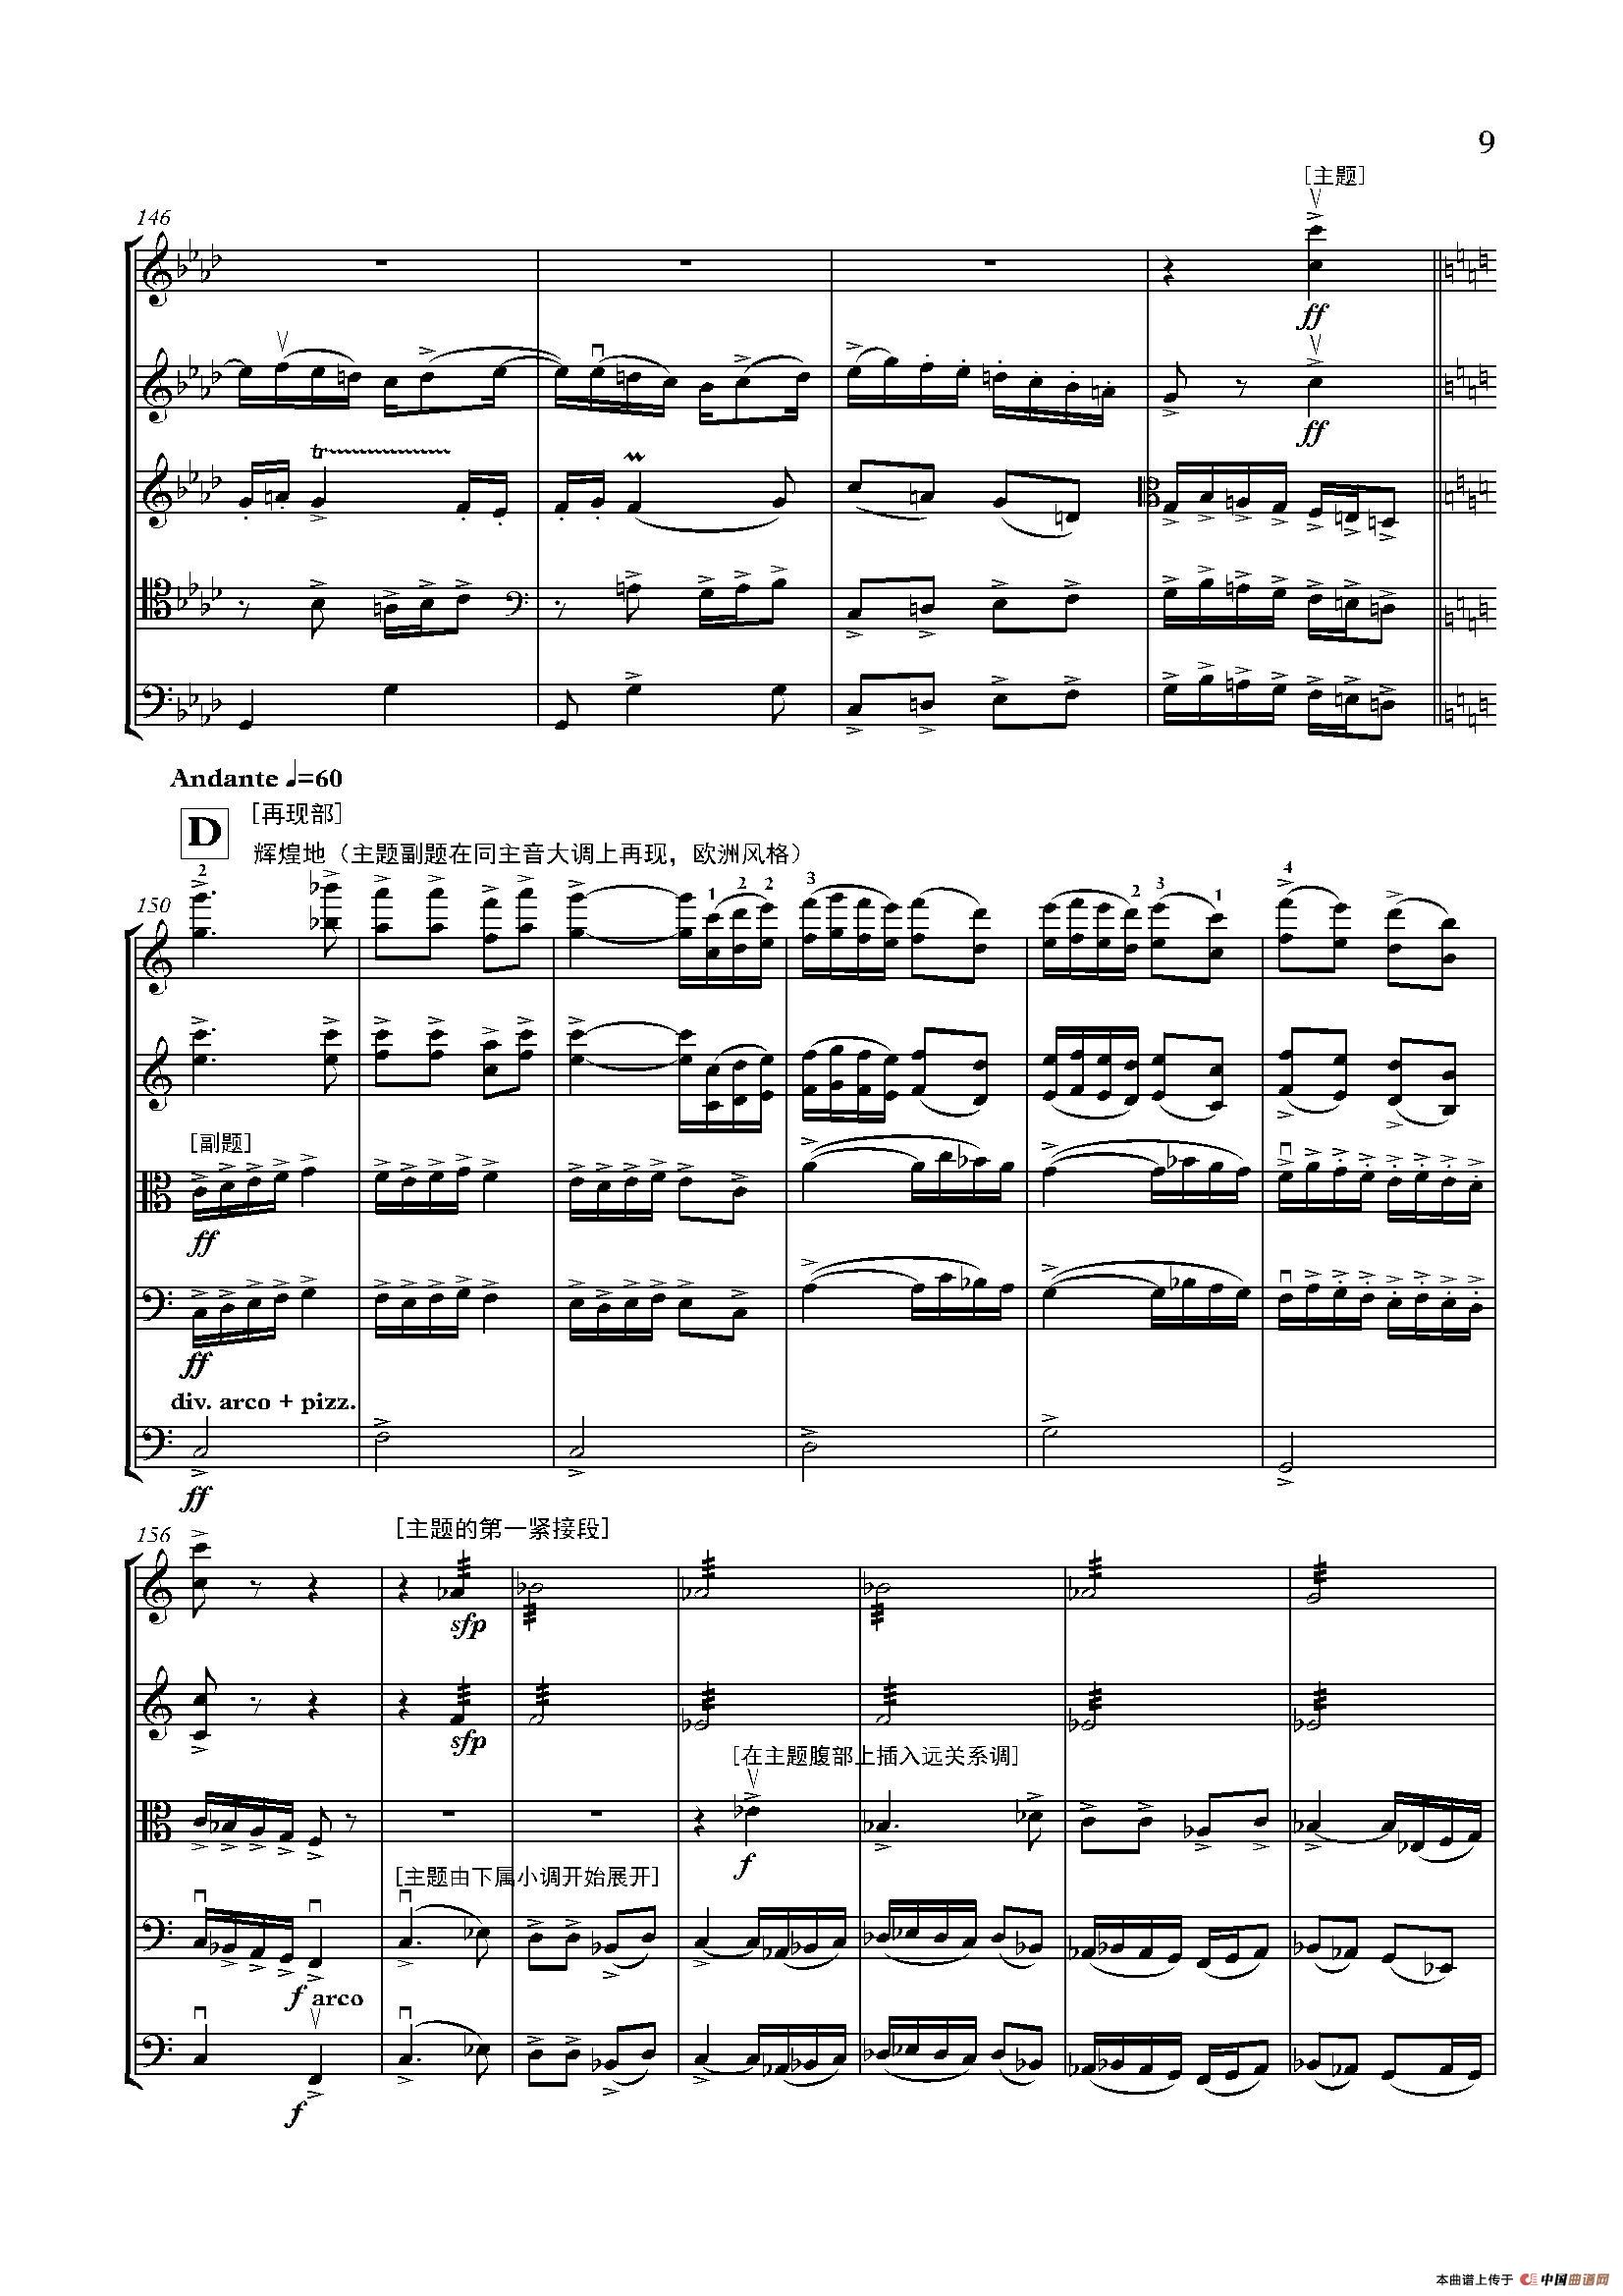 弦乐大赋格·丝绸之路上的哲学沉思（五重奏）小提琴谱